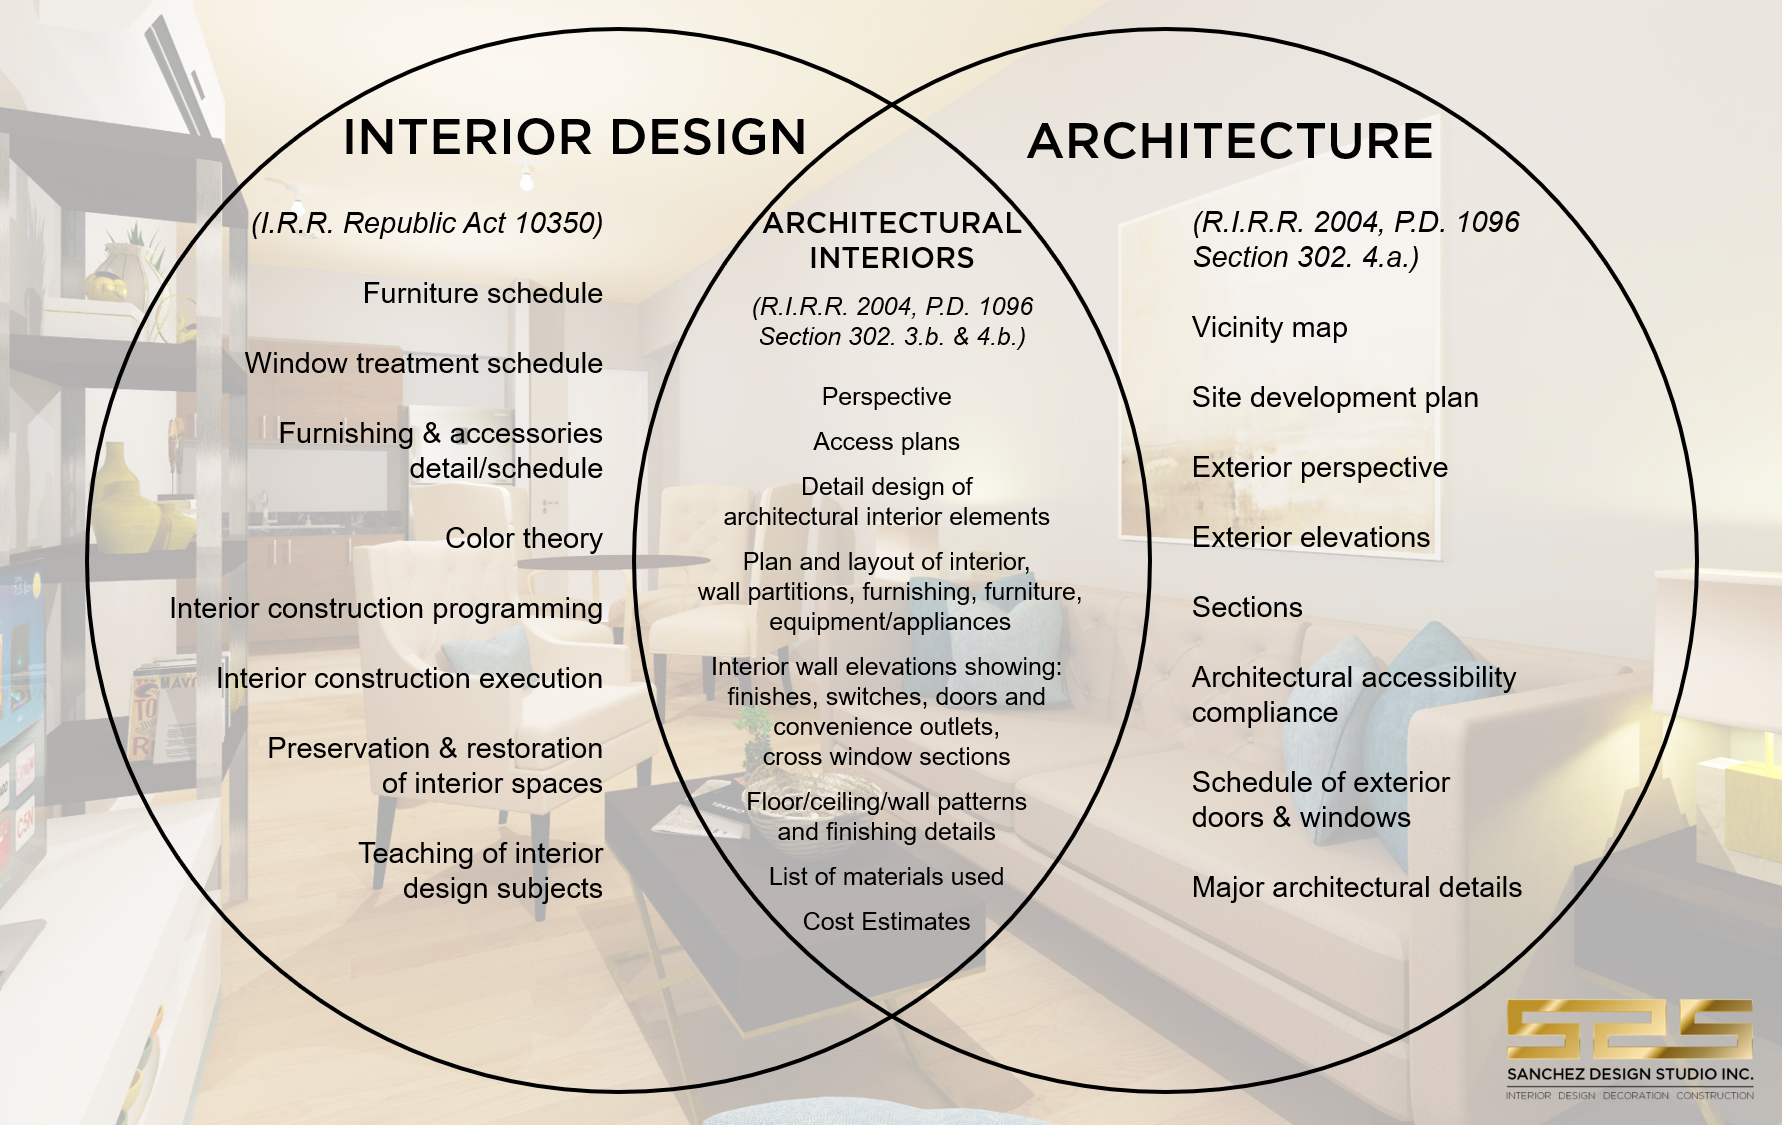 The Case of Interior Design vs. Architecture